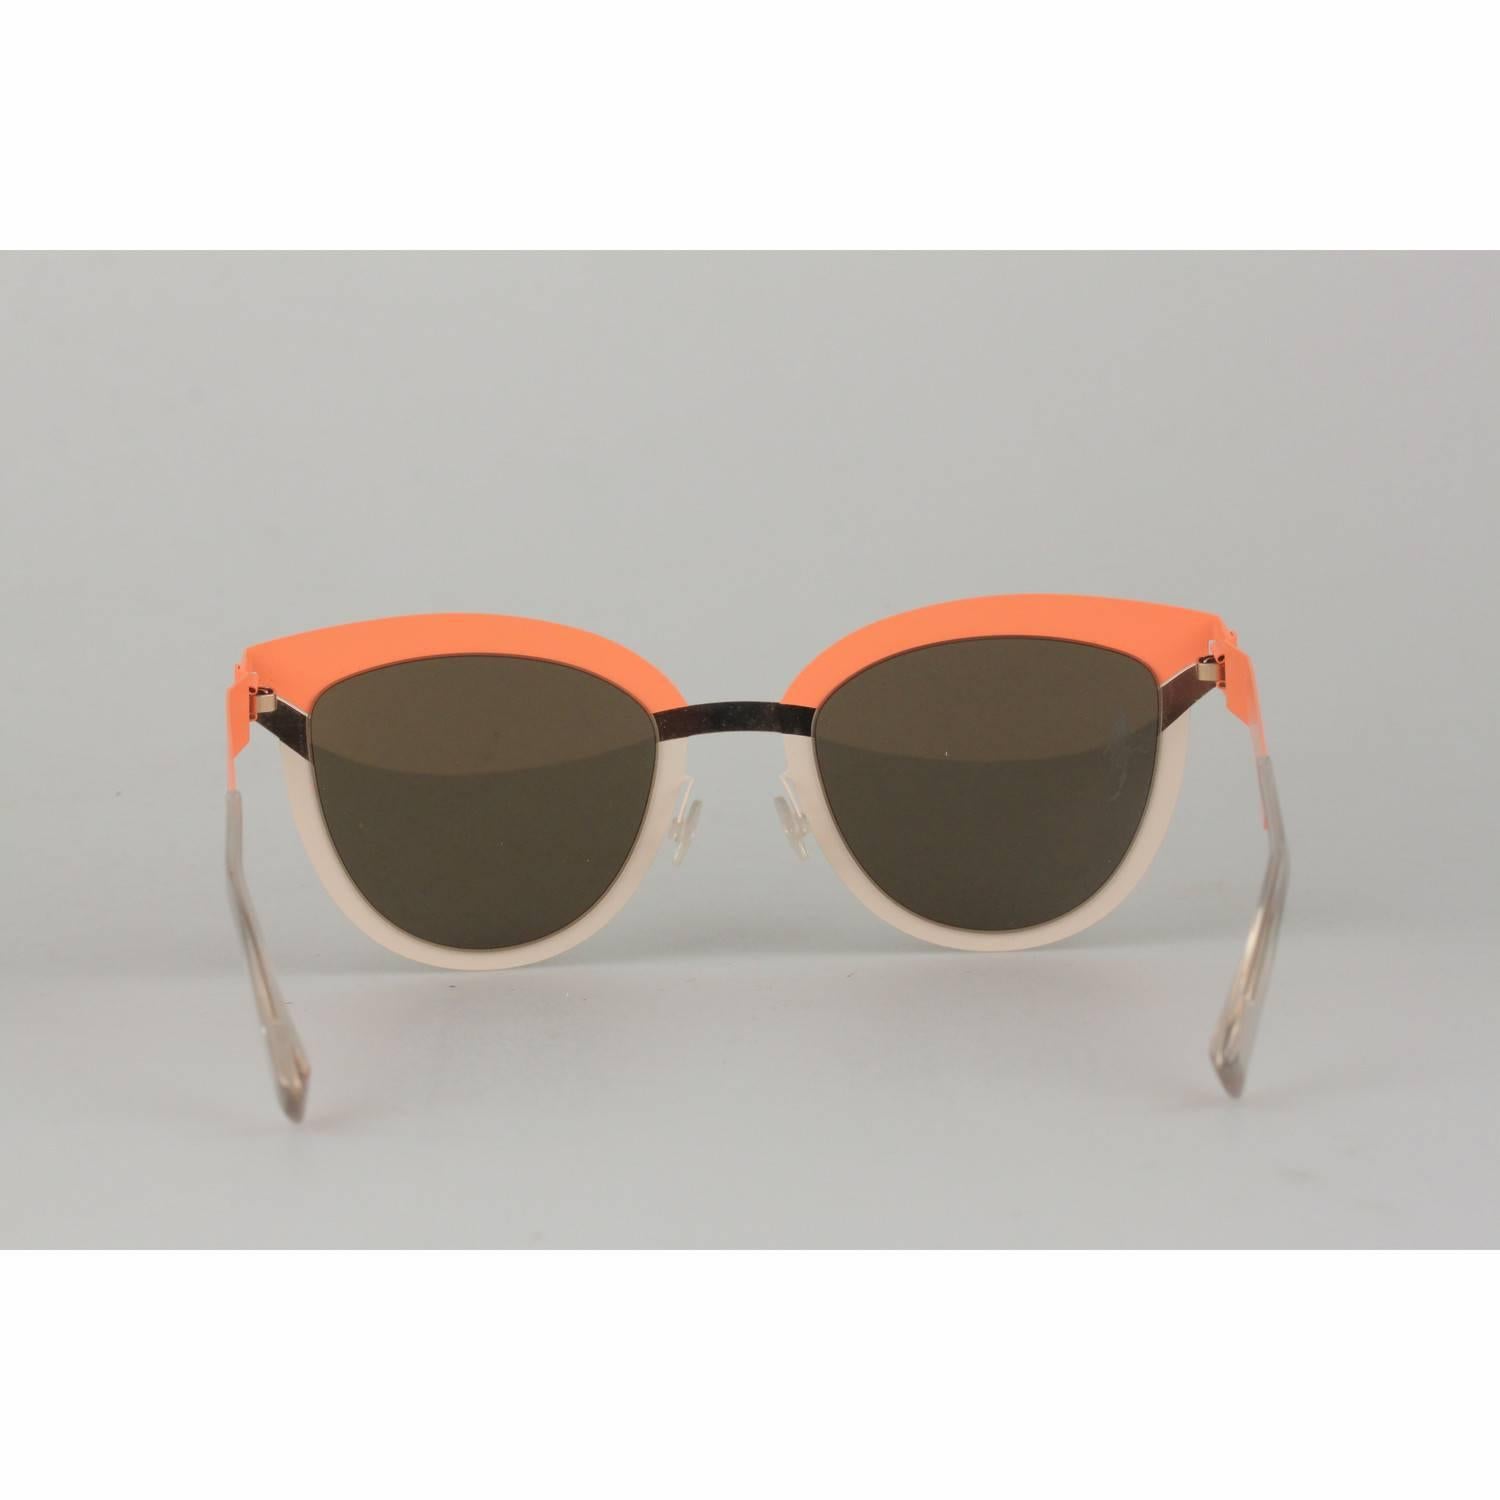 Orange MYKITA STUDIO Mint Sunglasses S8 Tangerine Desert Modules Green Lens